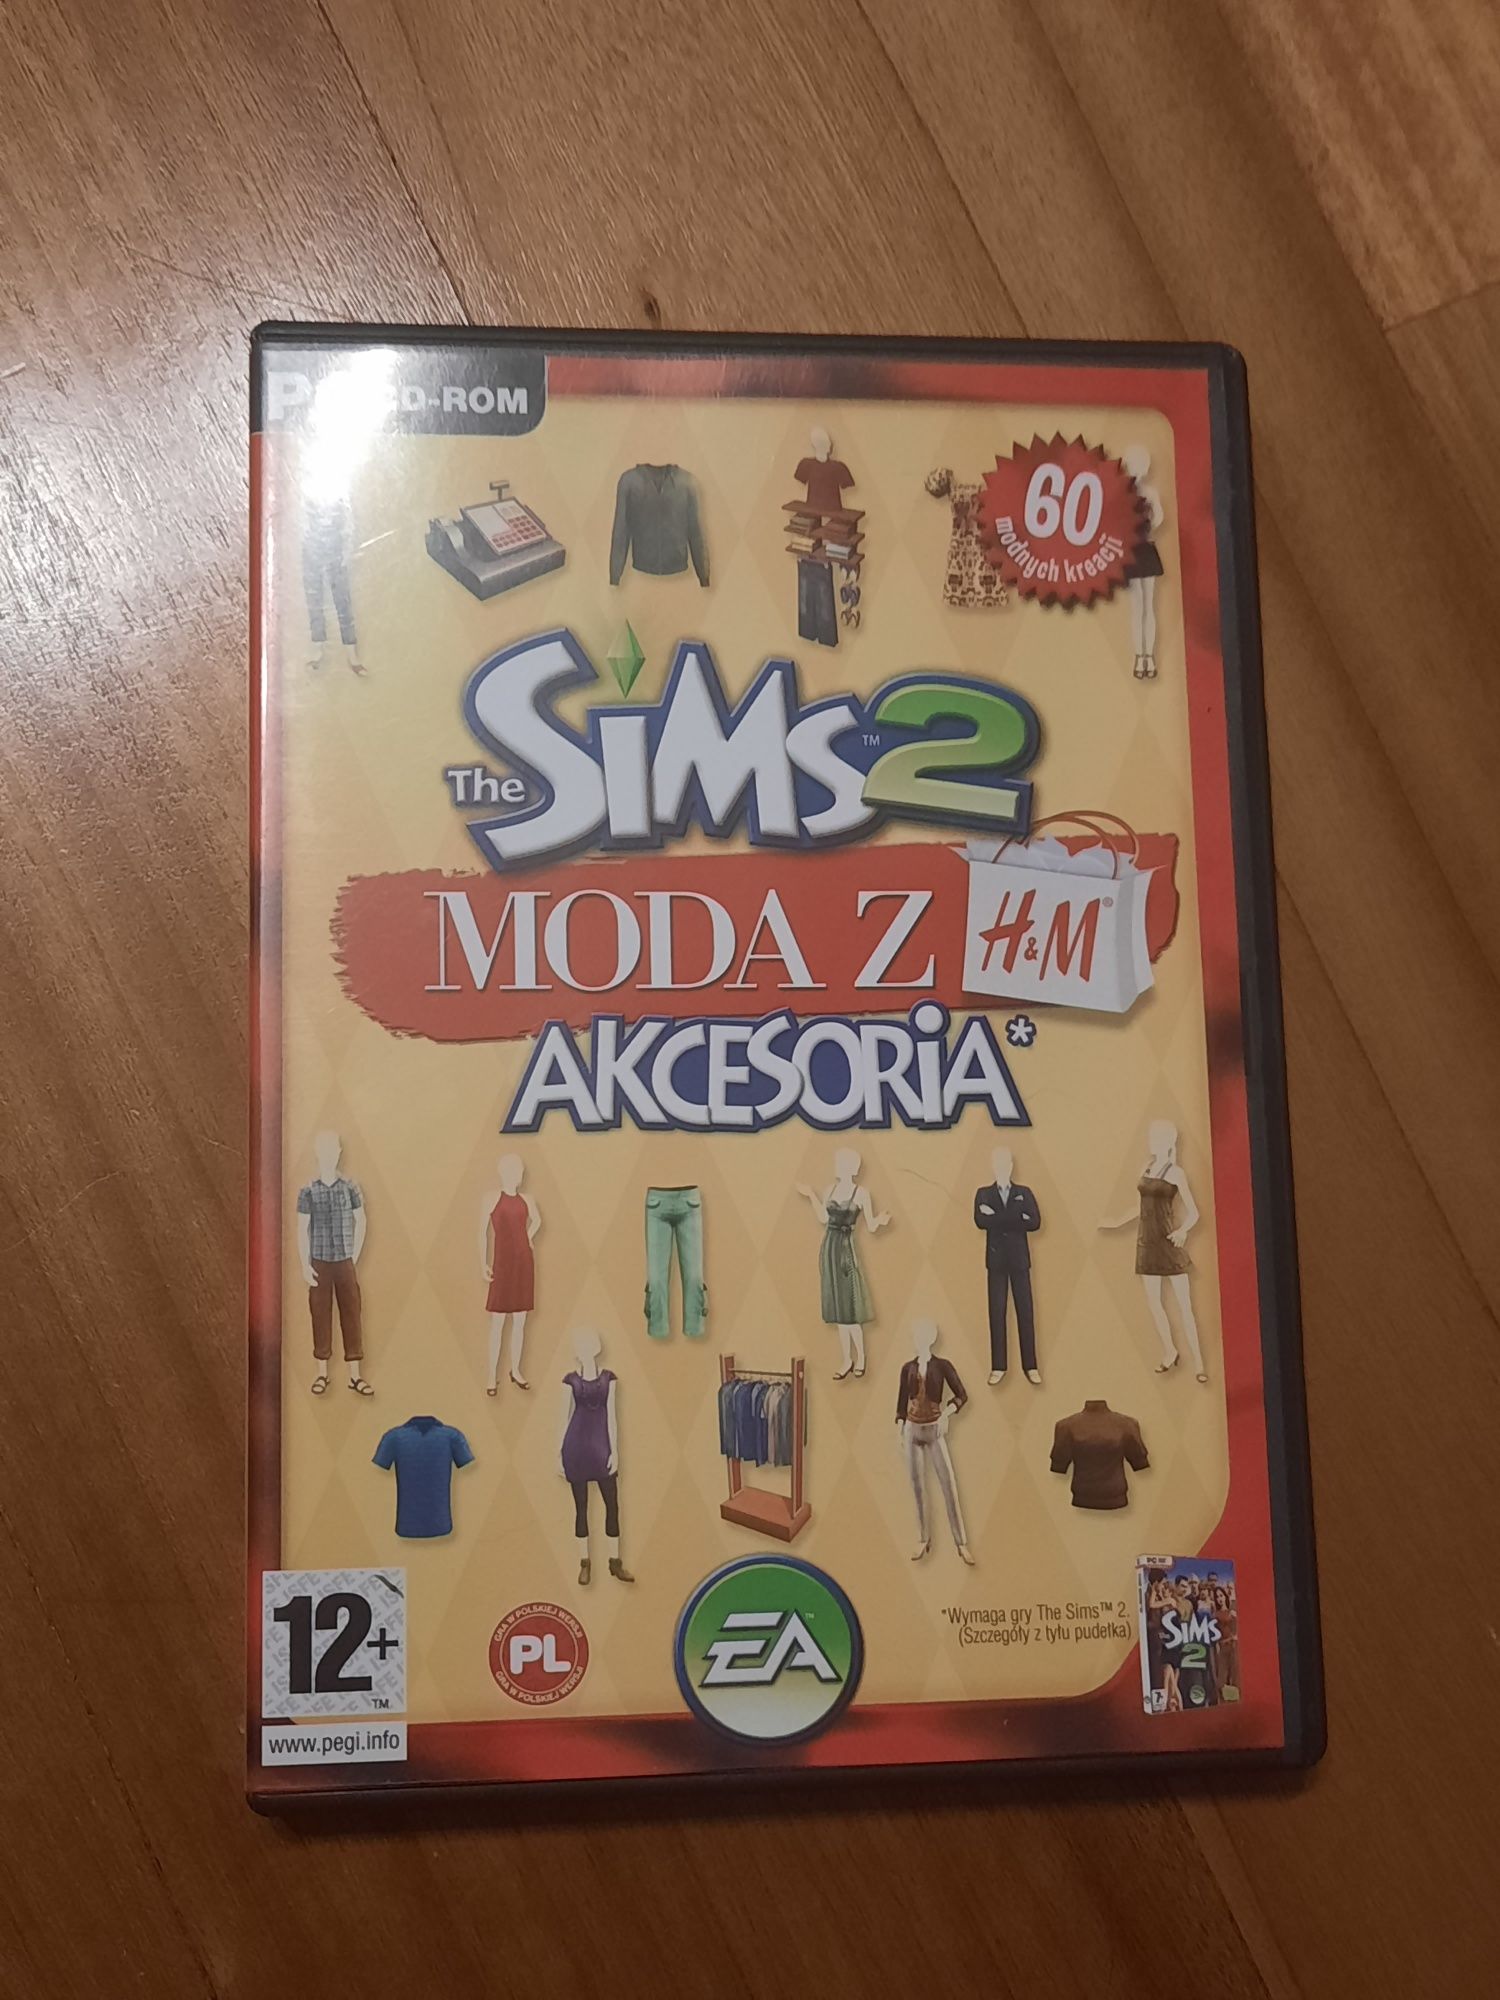 Dodatek do gry The Sims 2 "Moda z H&M" PC CD-ROM